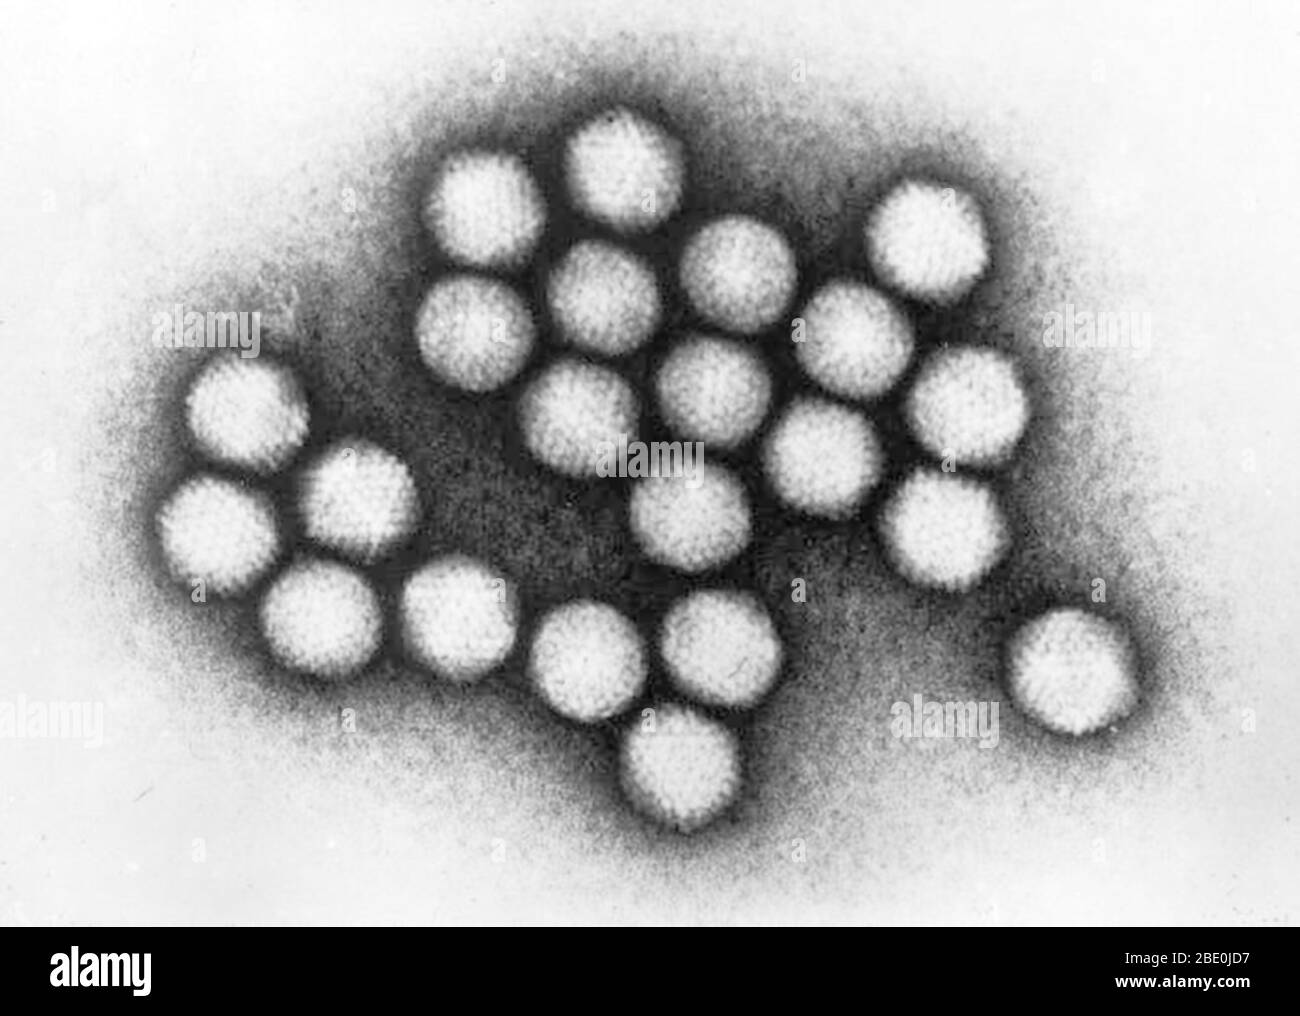 Trasmissione di particelle di adenovirus. Gli adenovirus (membri della famiglia Adenoviridae) sono virus non incapsulati con un nucleocapsid icosaedrico contenente un genoma di DNA a doppio filamento. Le infezioni da adenovirus causano più comunemente malattie del sistema respiratorio; tuttavia, a seconda del sierotipo infettante, possono anche causare varie altre malattie e presentazioni. Oltre al coinvolgimento respiratorio, le malattie e le presentazioni di adenovirus includono gastroenterite, congiuntivite, cistite e malattie da rash. Sintomi di malattia respiratoria causati dall'adenovirus i. Foto Stock